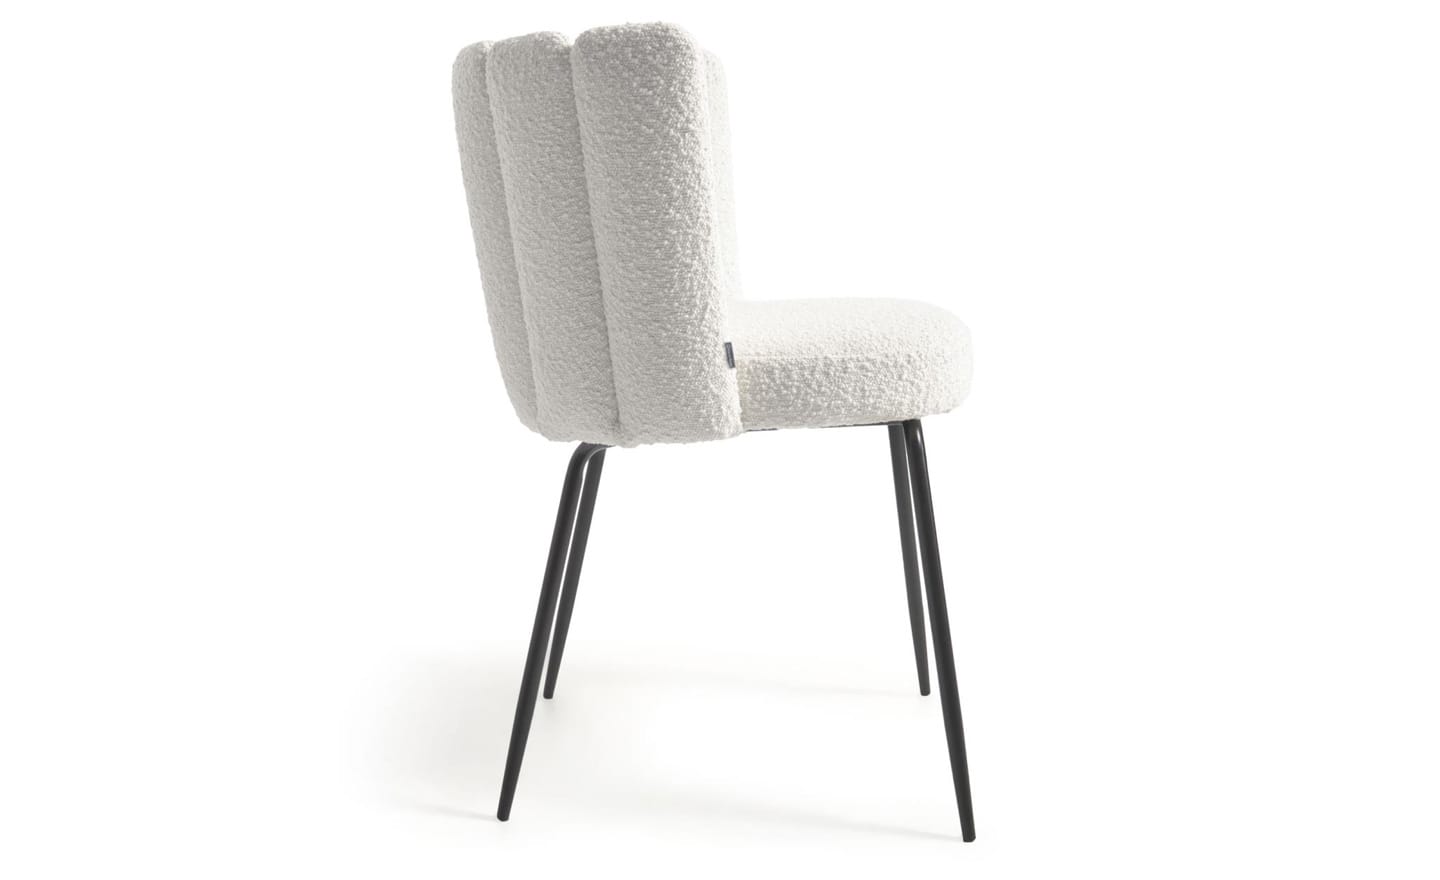 Cadeira Aniela Branco, estofada com tecido de efeito borrego na cor branca. Design envolvente para espaços de refeição elegantes.